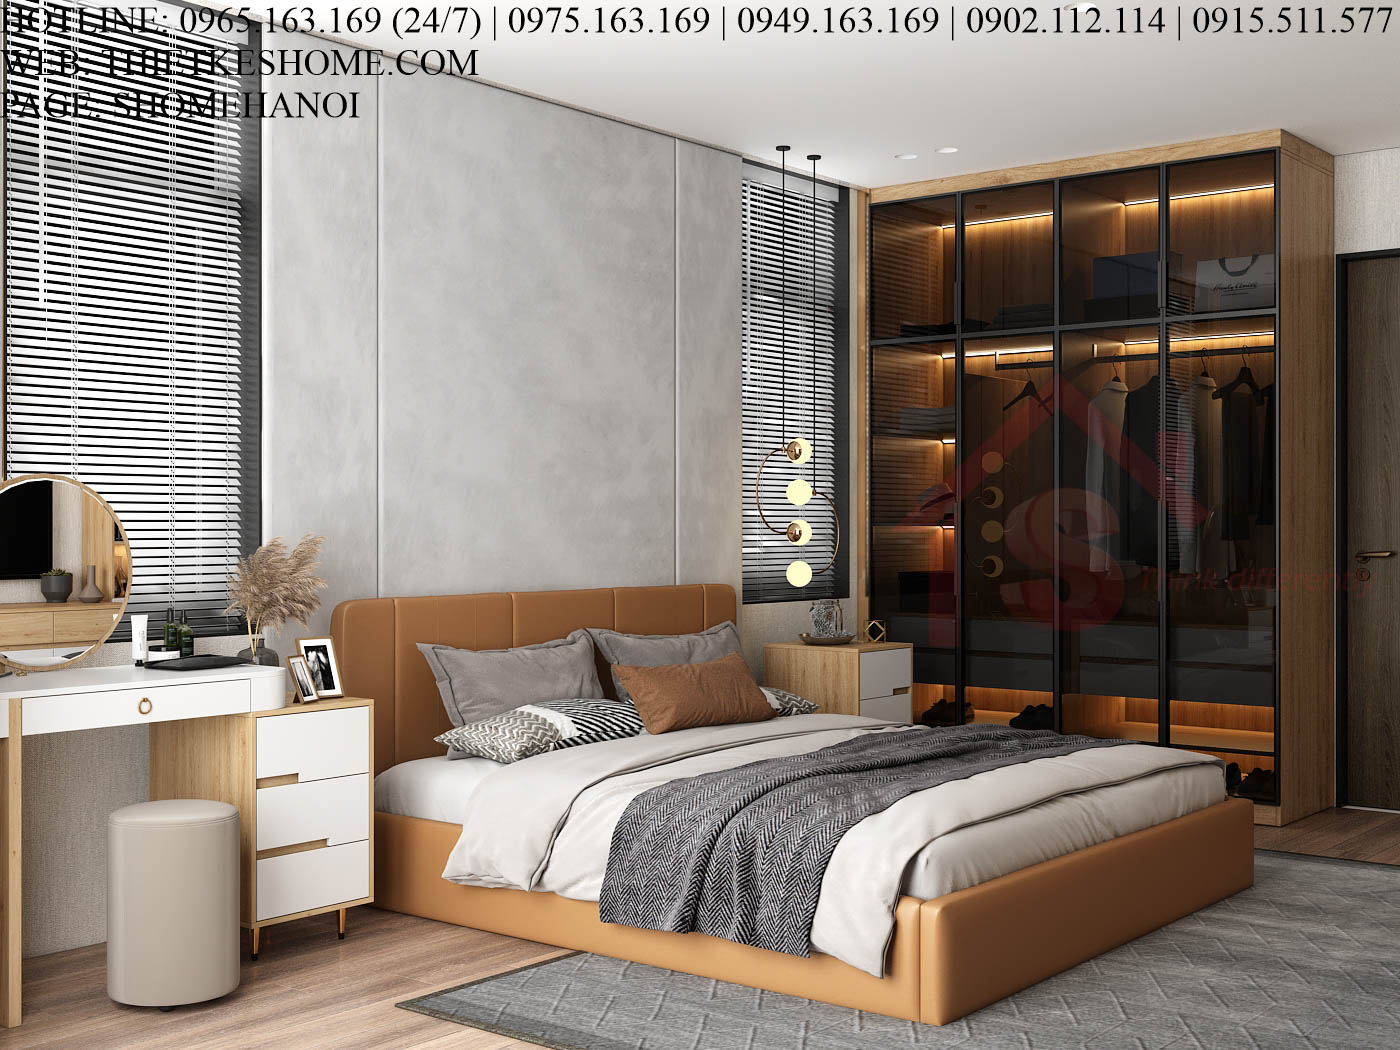 S HOME Combo mẫu nội thất phòng ngủ đẹp hiện đại tiện dụng SHOME6818